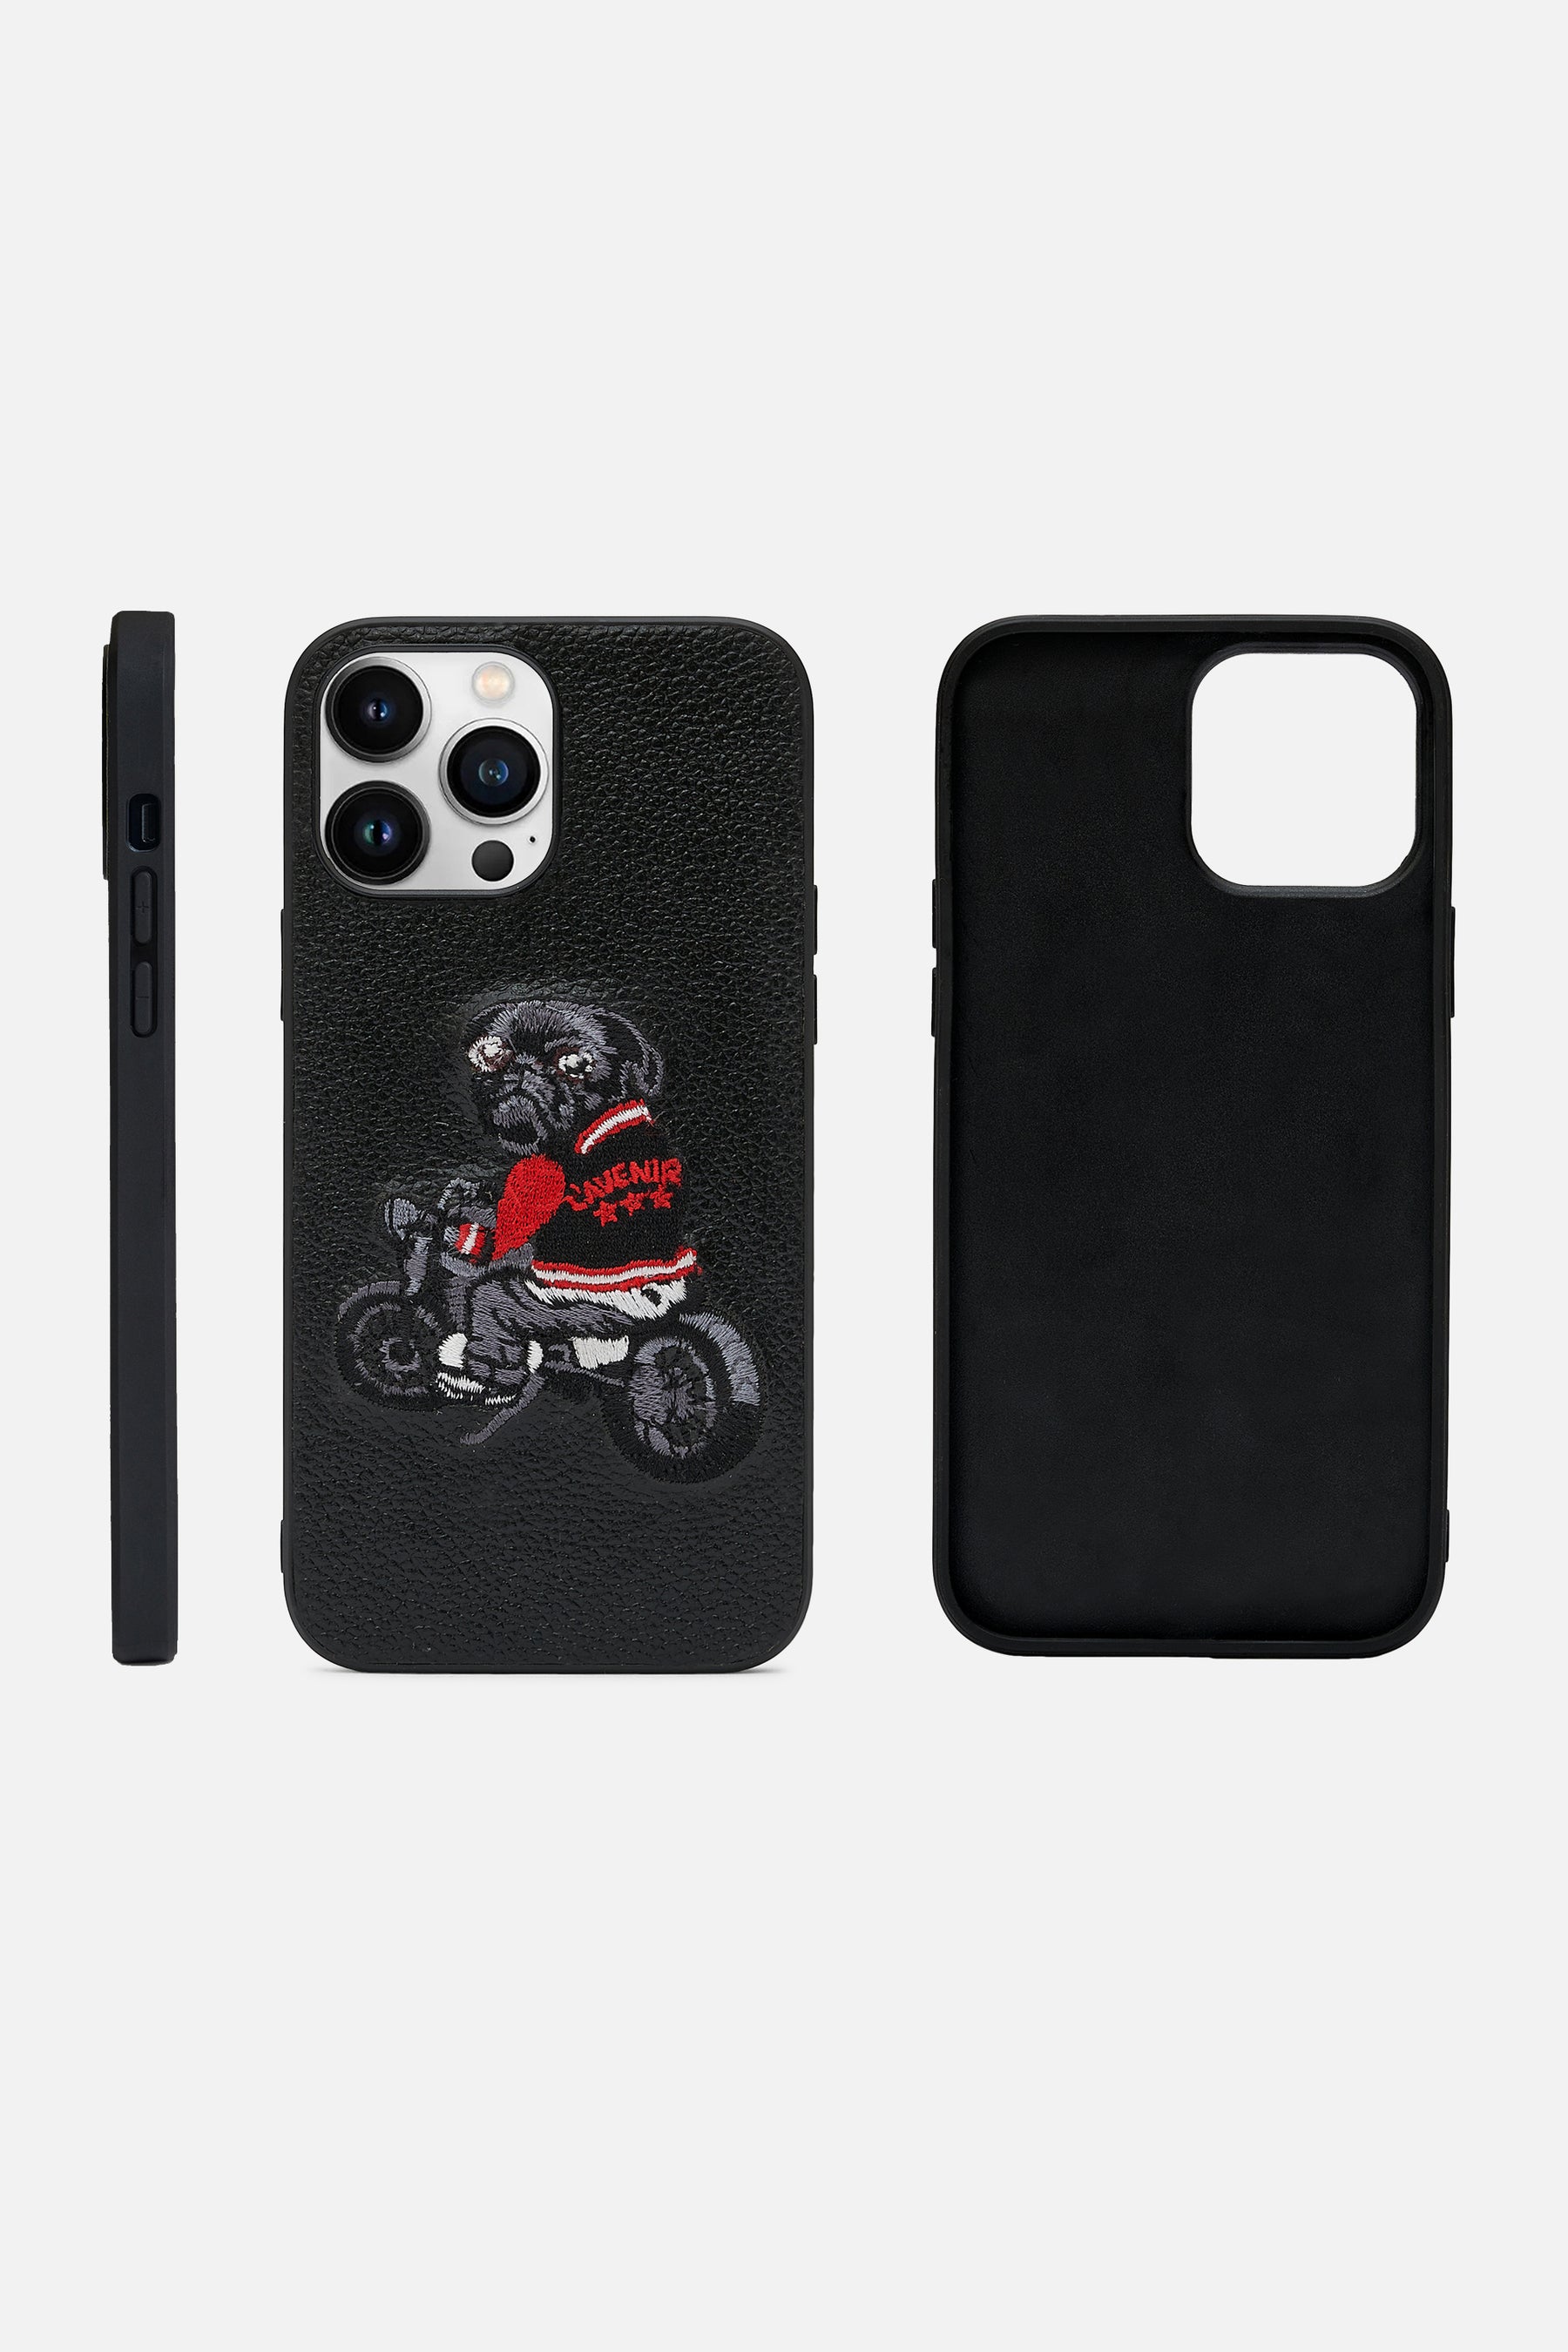 Iphone Case - Biker Pug Dog Version- Black